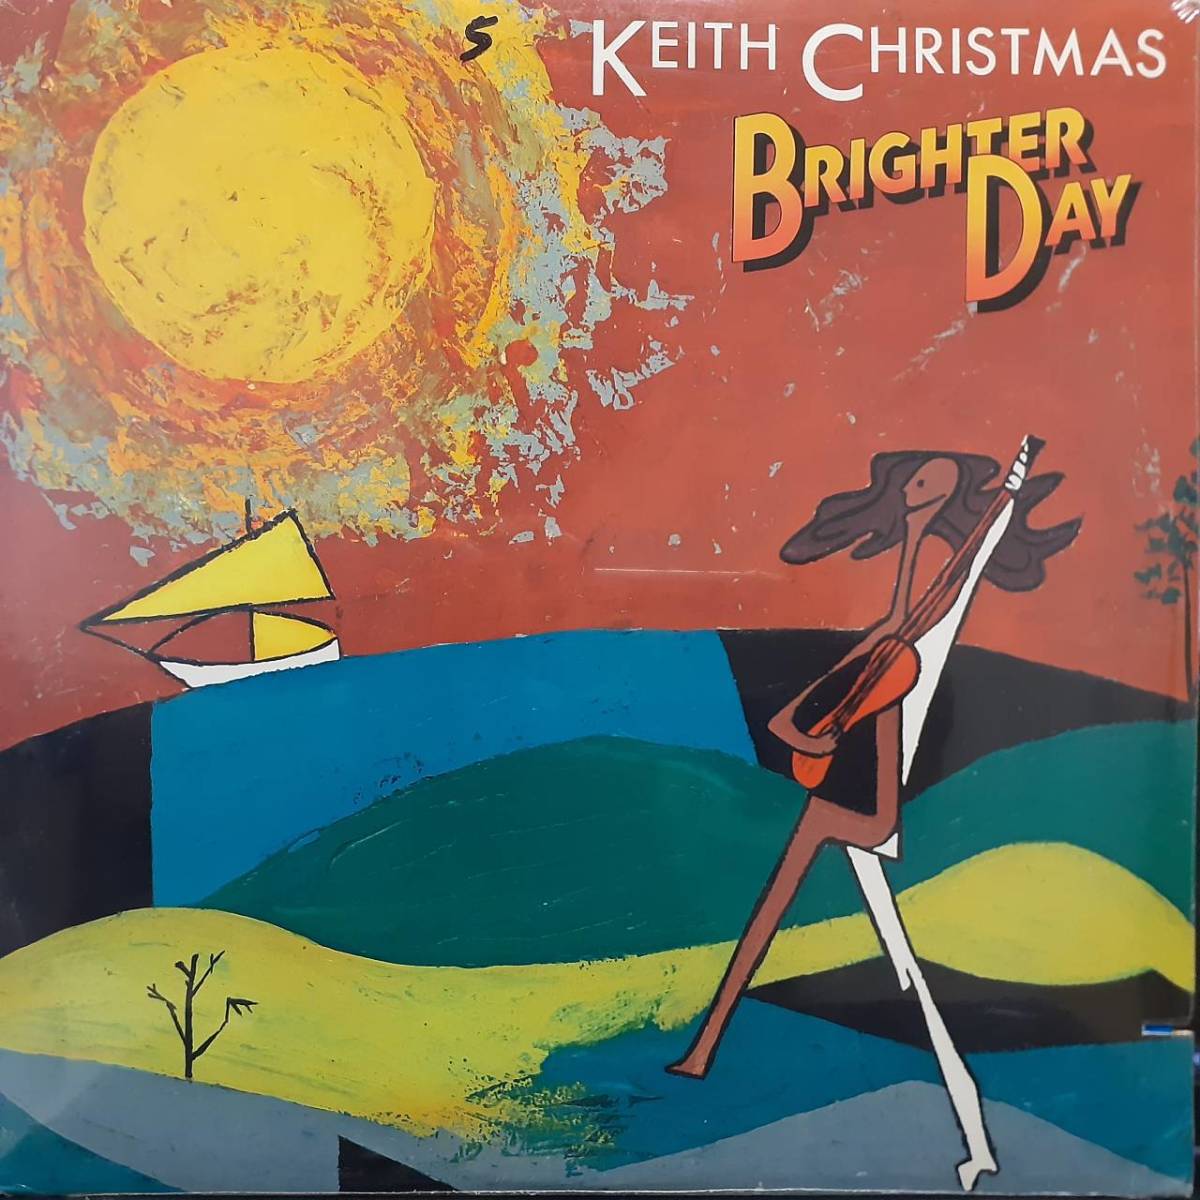  чудо нераспечатанный защита! рис MANTICOREo Rige LP!Keith Christmas / Brighter Day 1975 год MA6-503S1 King Crimson жесткость большой . участие EL&P Sealed